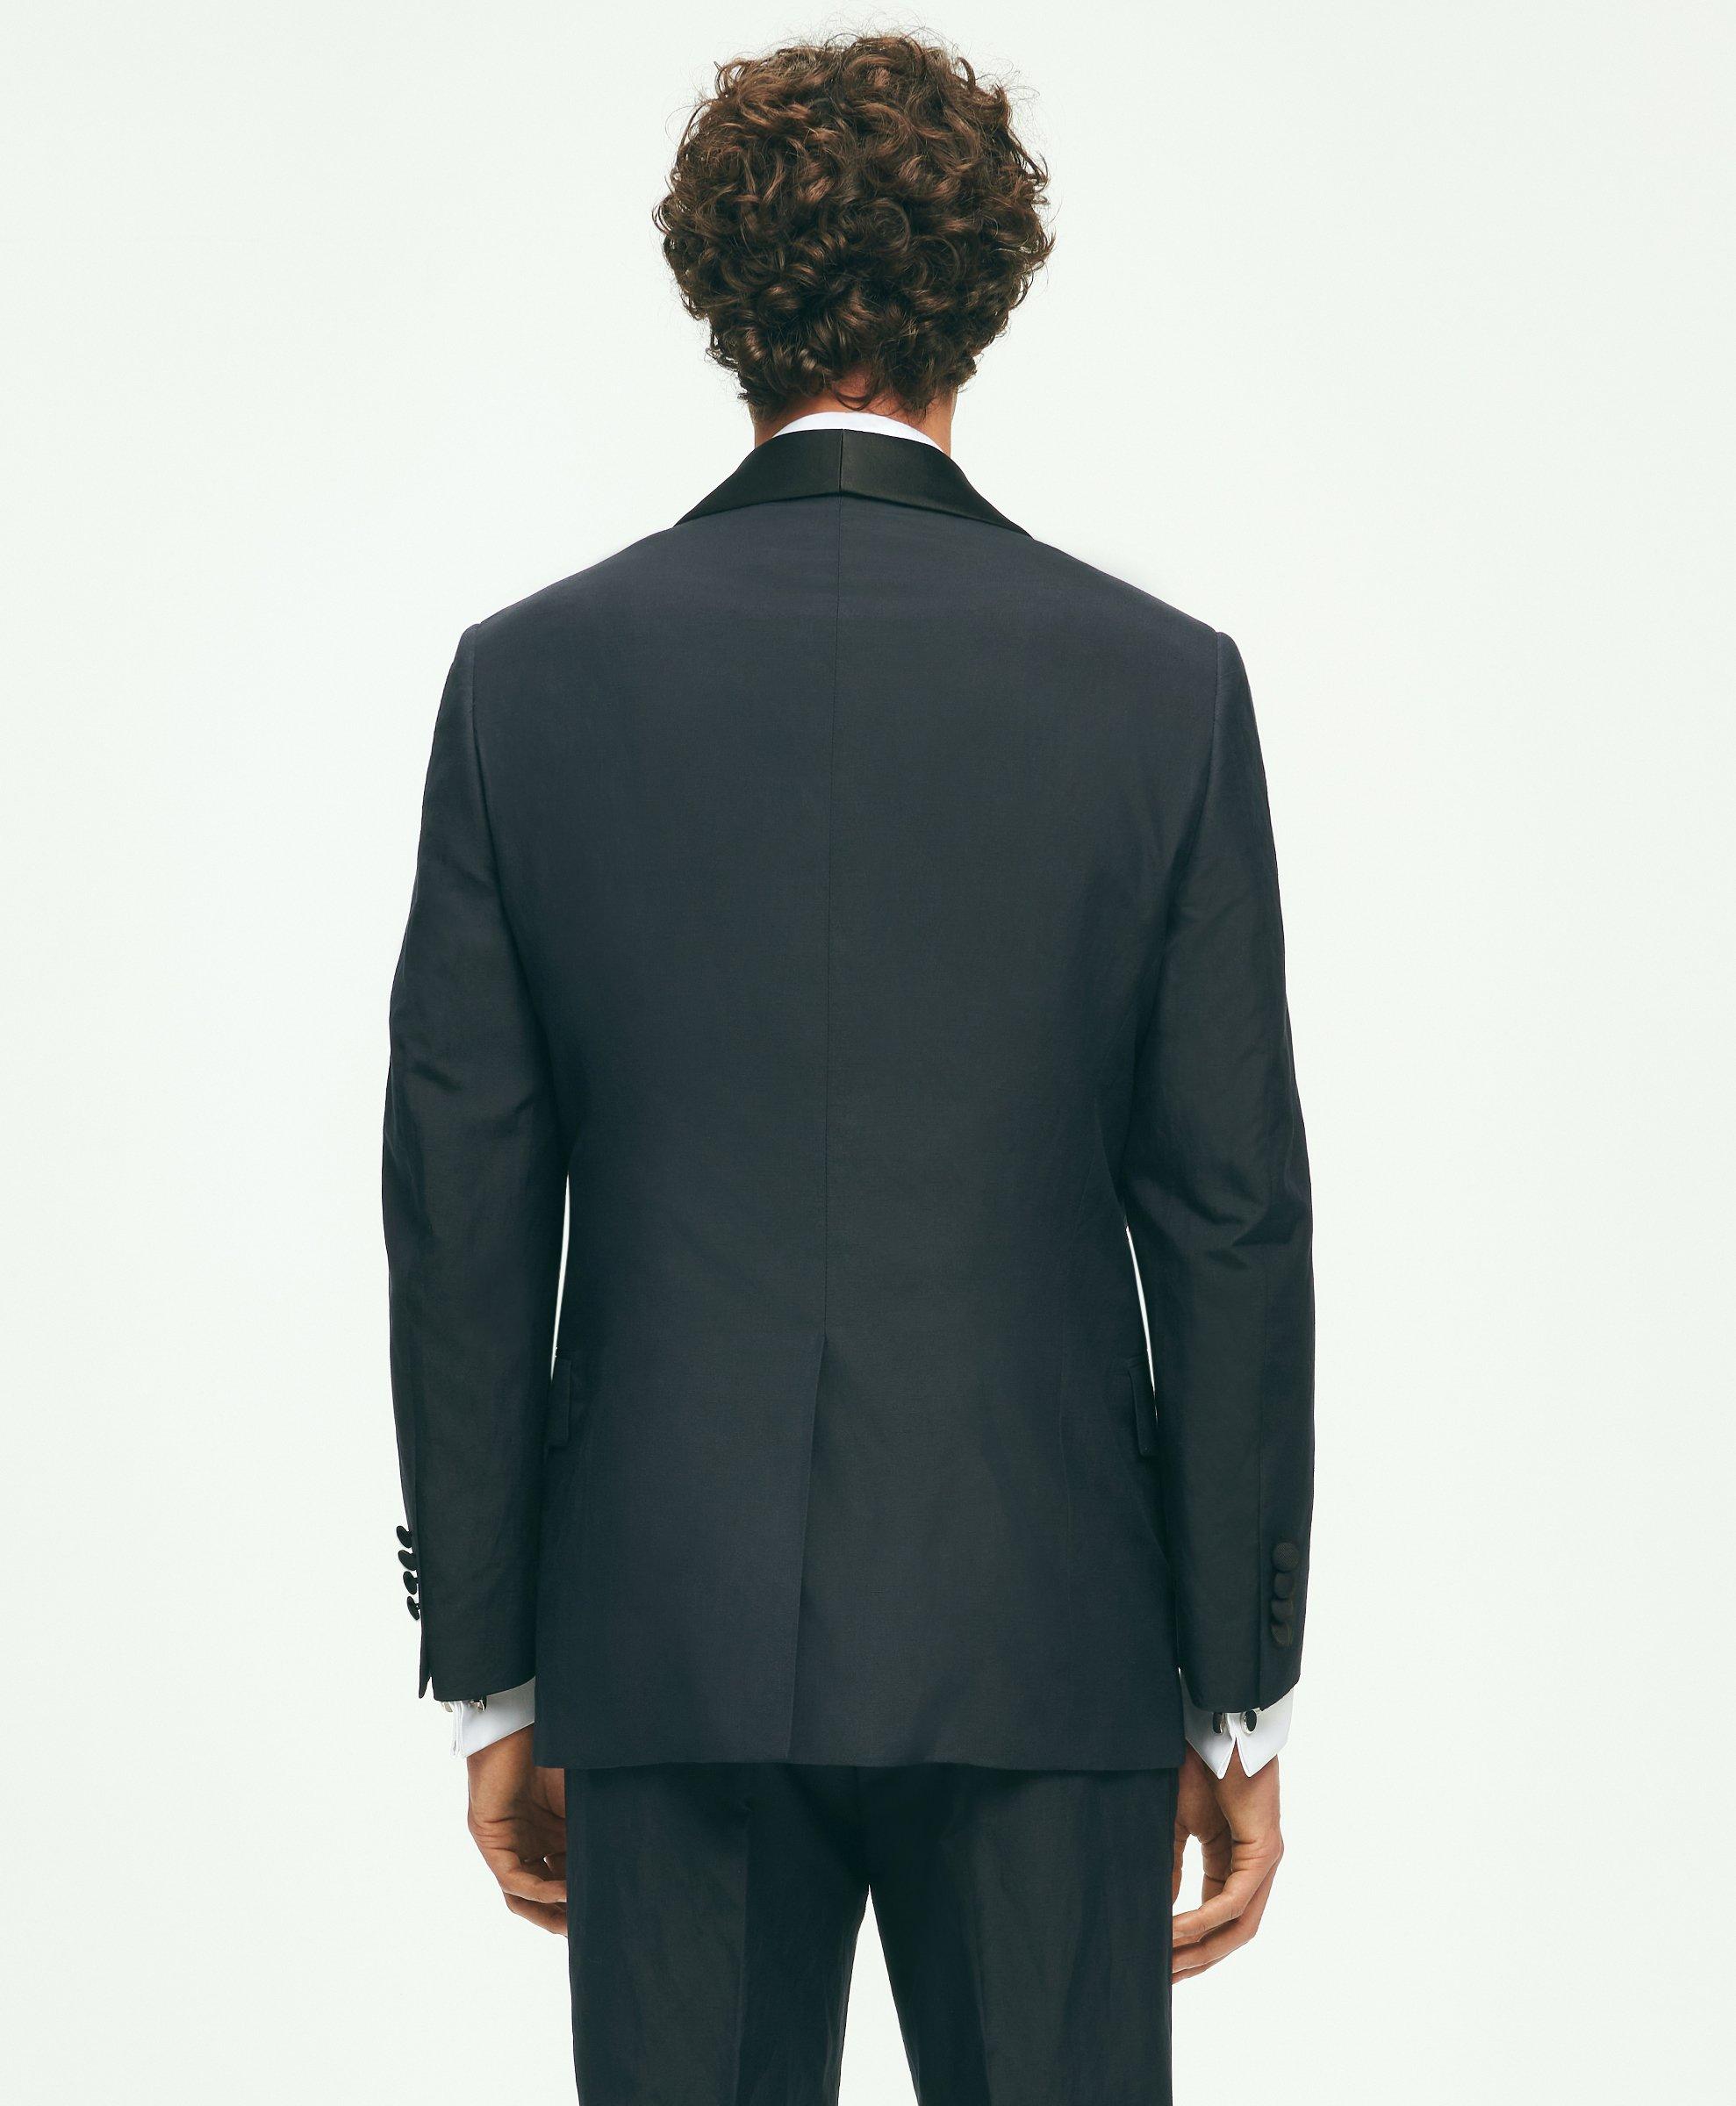 Black Fleece Luxury Formalwear for Men & Women | Brooks Brothers